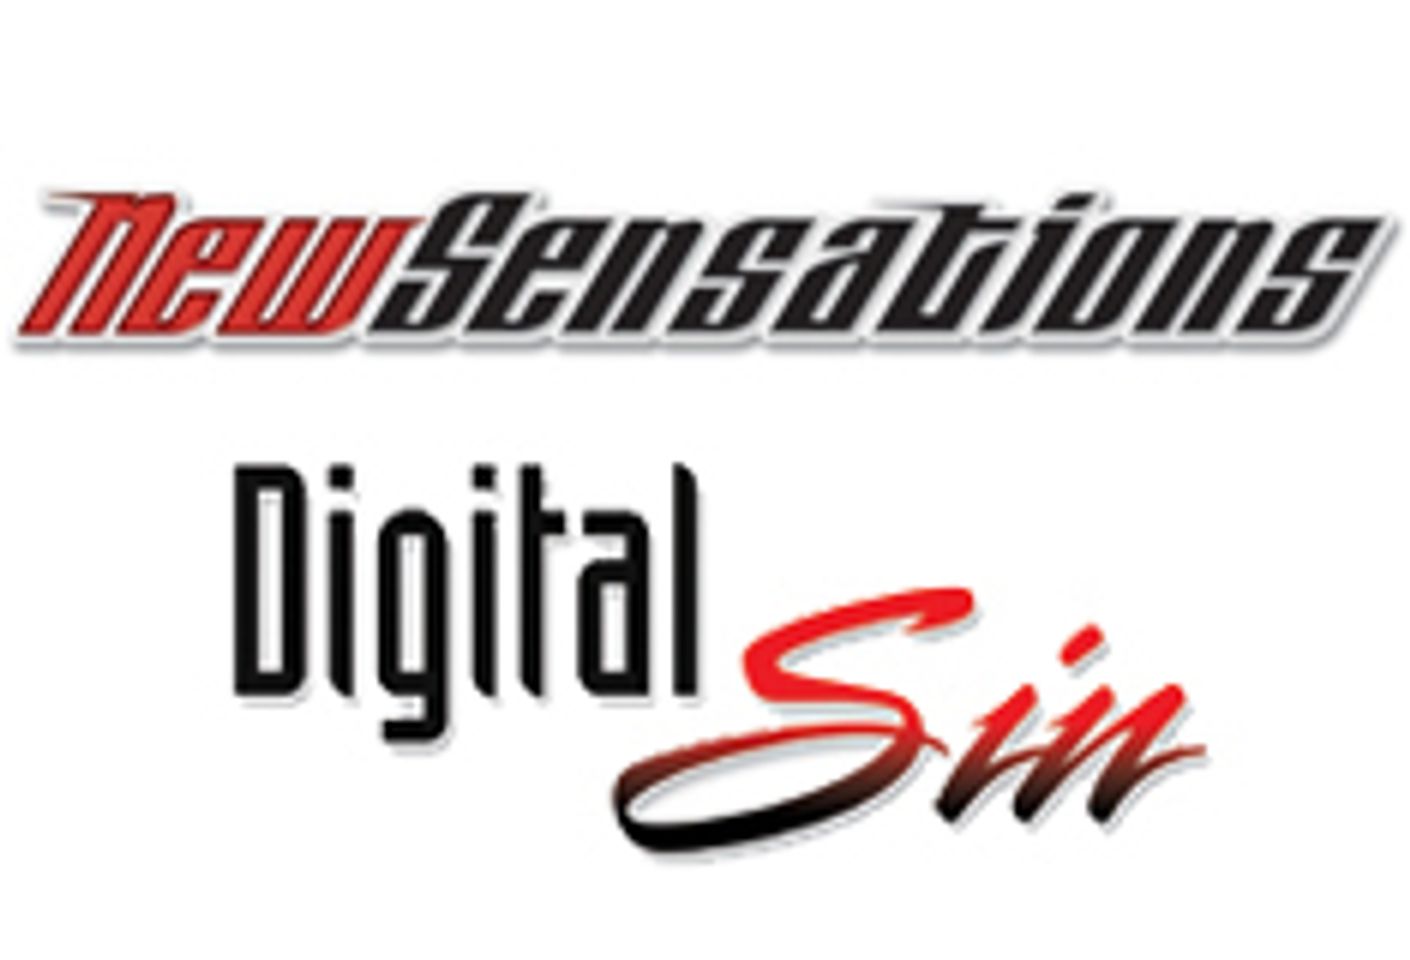 New Sensations/Digital Sin Nab 45 2013 AVN Award Nominations